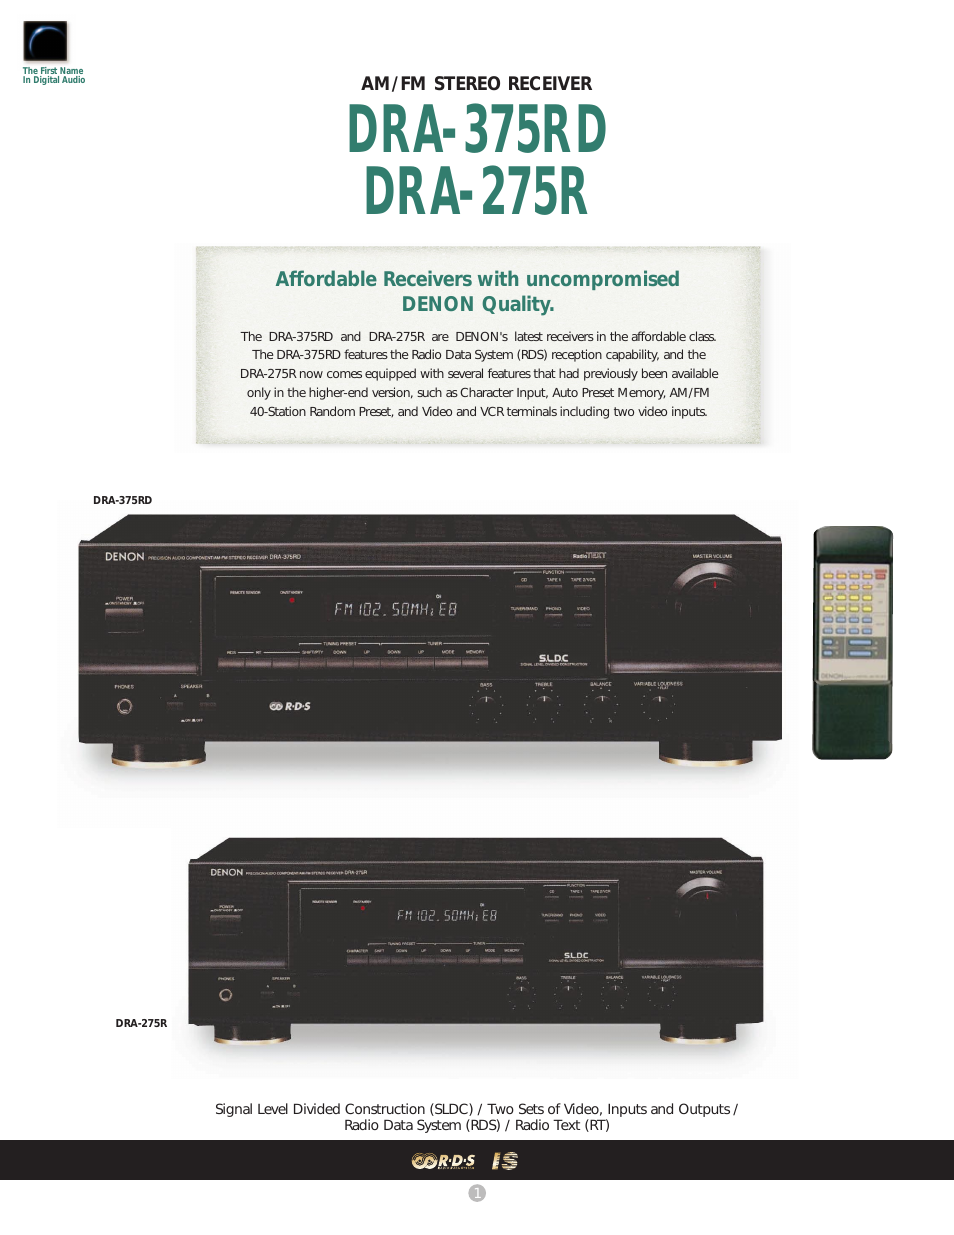 DRA-275R